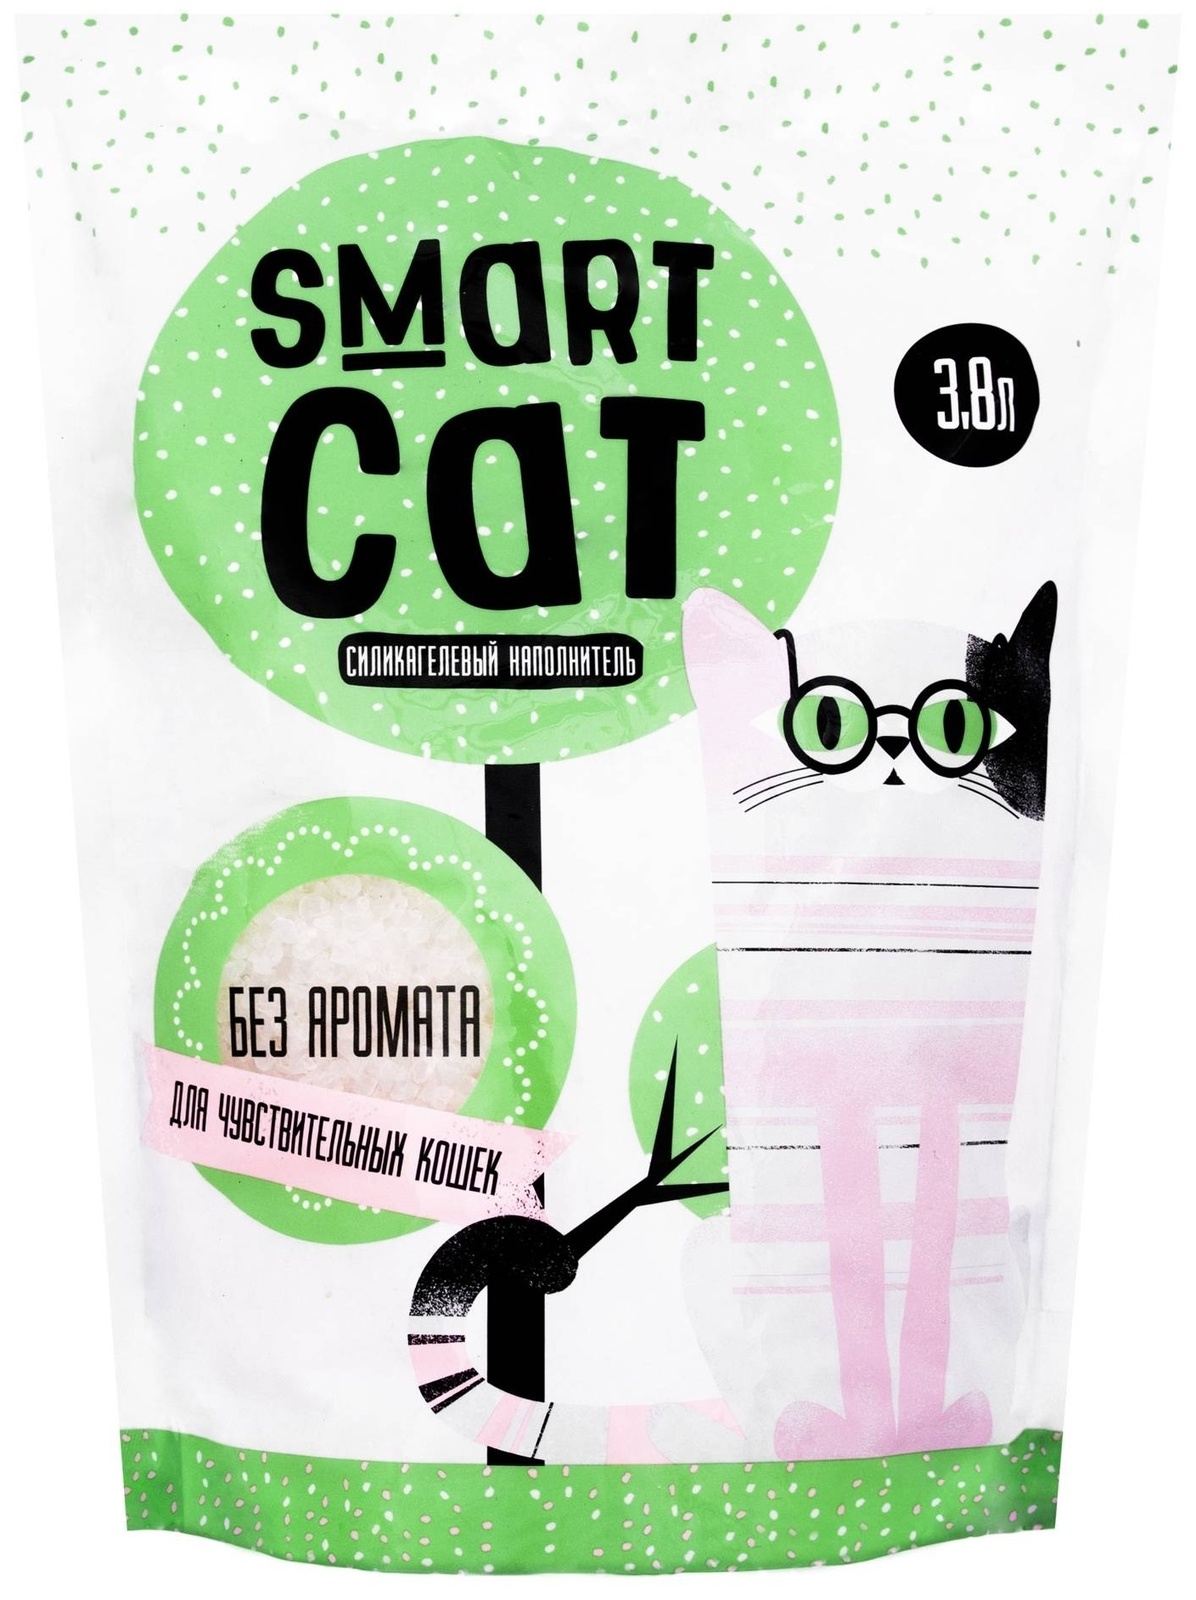 Силикагелевый наполнитель для чувствительных кошек, без аромата (15,29 кг) Smart Cat наполнитель Силикагелевый наполнитель для чувствительных кошек, без аромата (15,29 кг) - фото 1